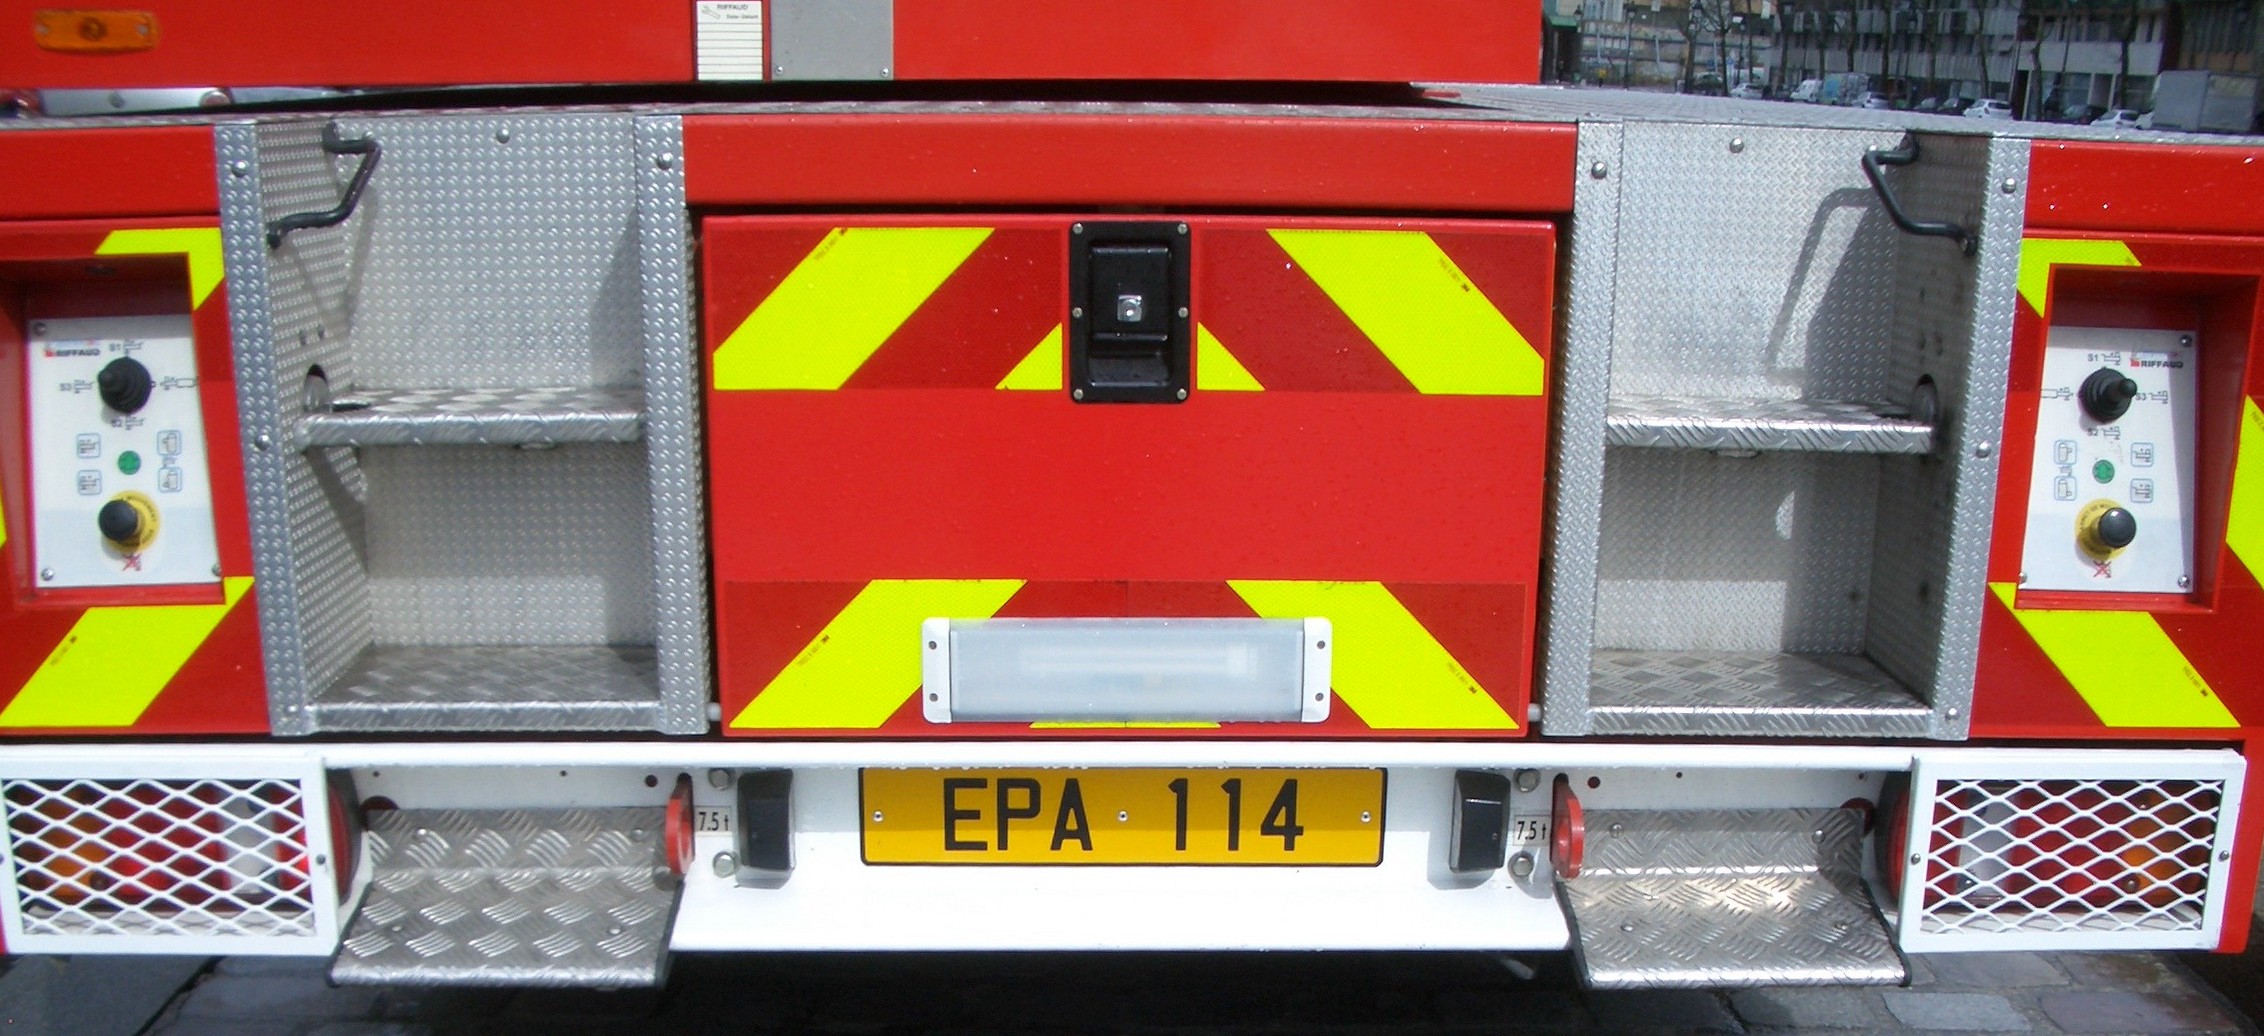 F_EPA-114-Feuerwehr-Paris-2_PP